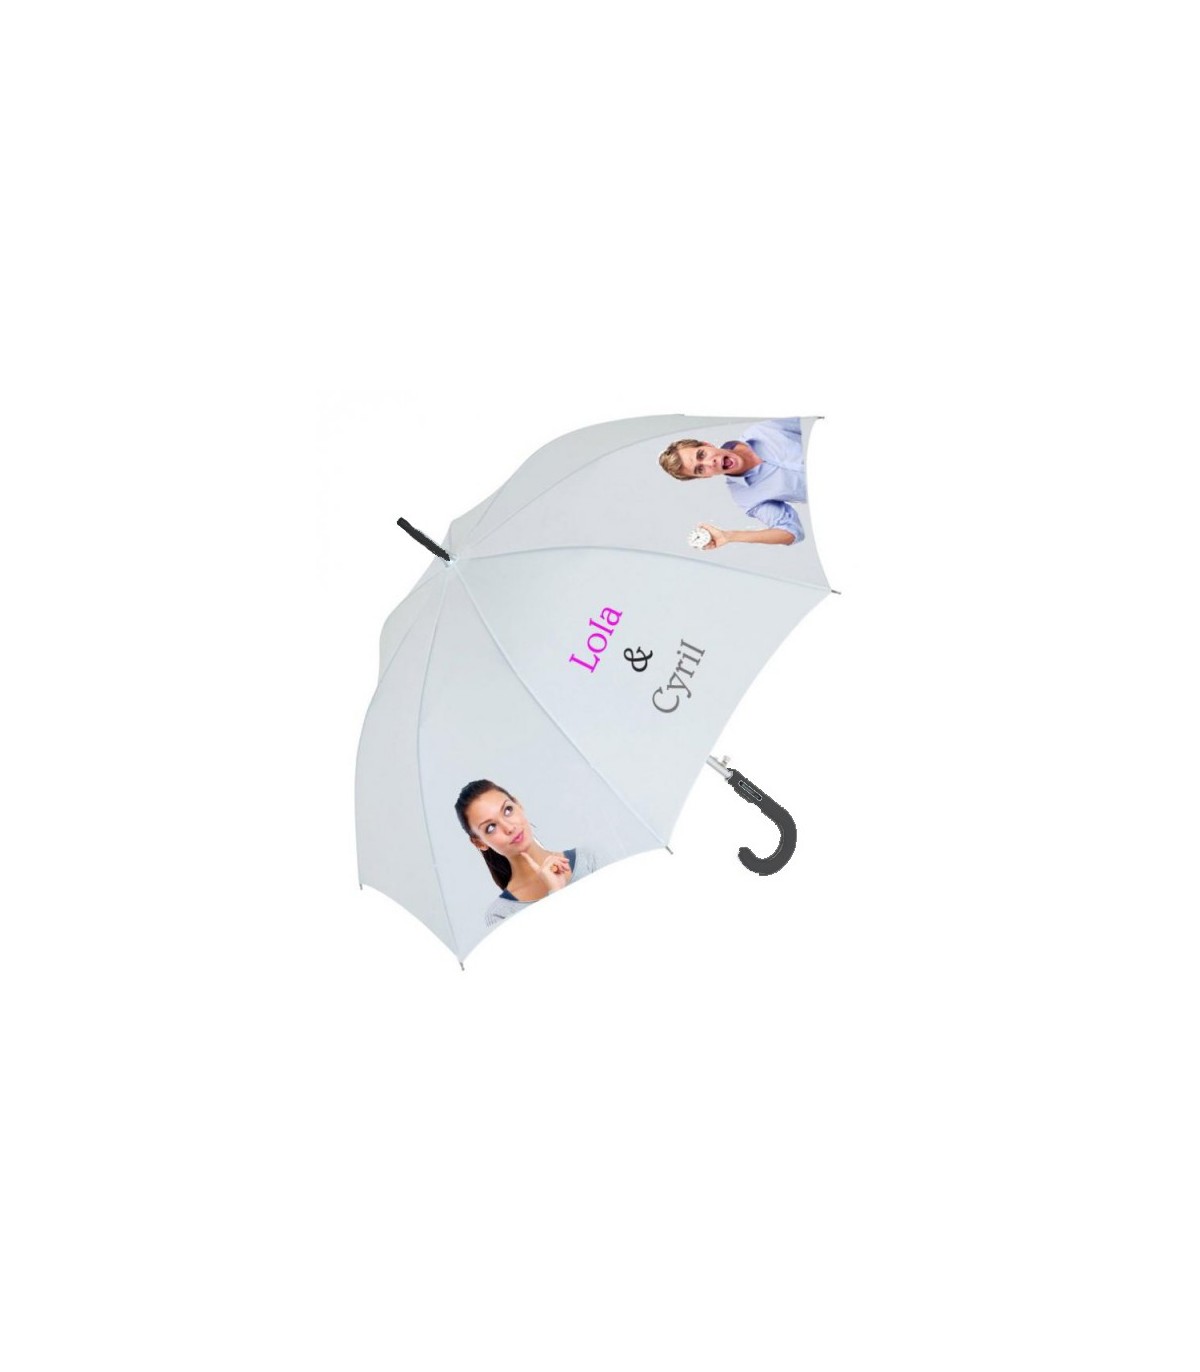 Anniversaire Parasol Mariages Accessoires Parapluies Personnalisé Personnalisé Imprimé Mr & Mrs Parapluie de mariage de mariage Parfait pour les mariés Protecteur de météo 